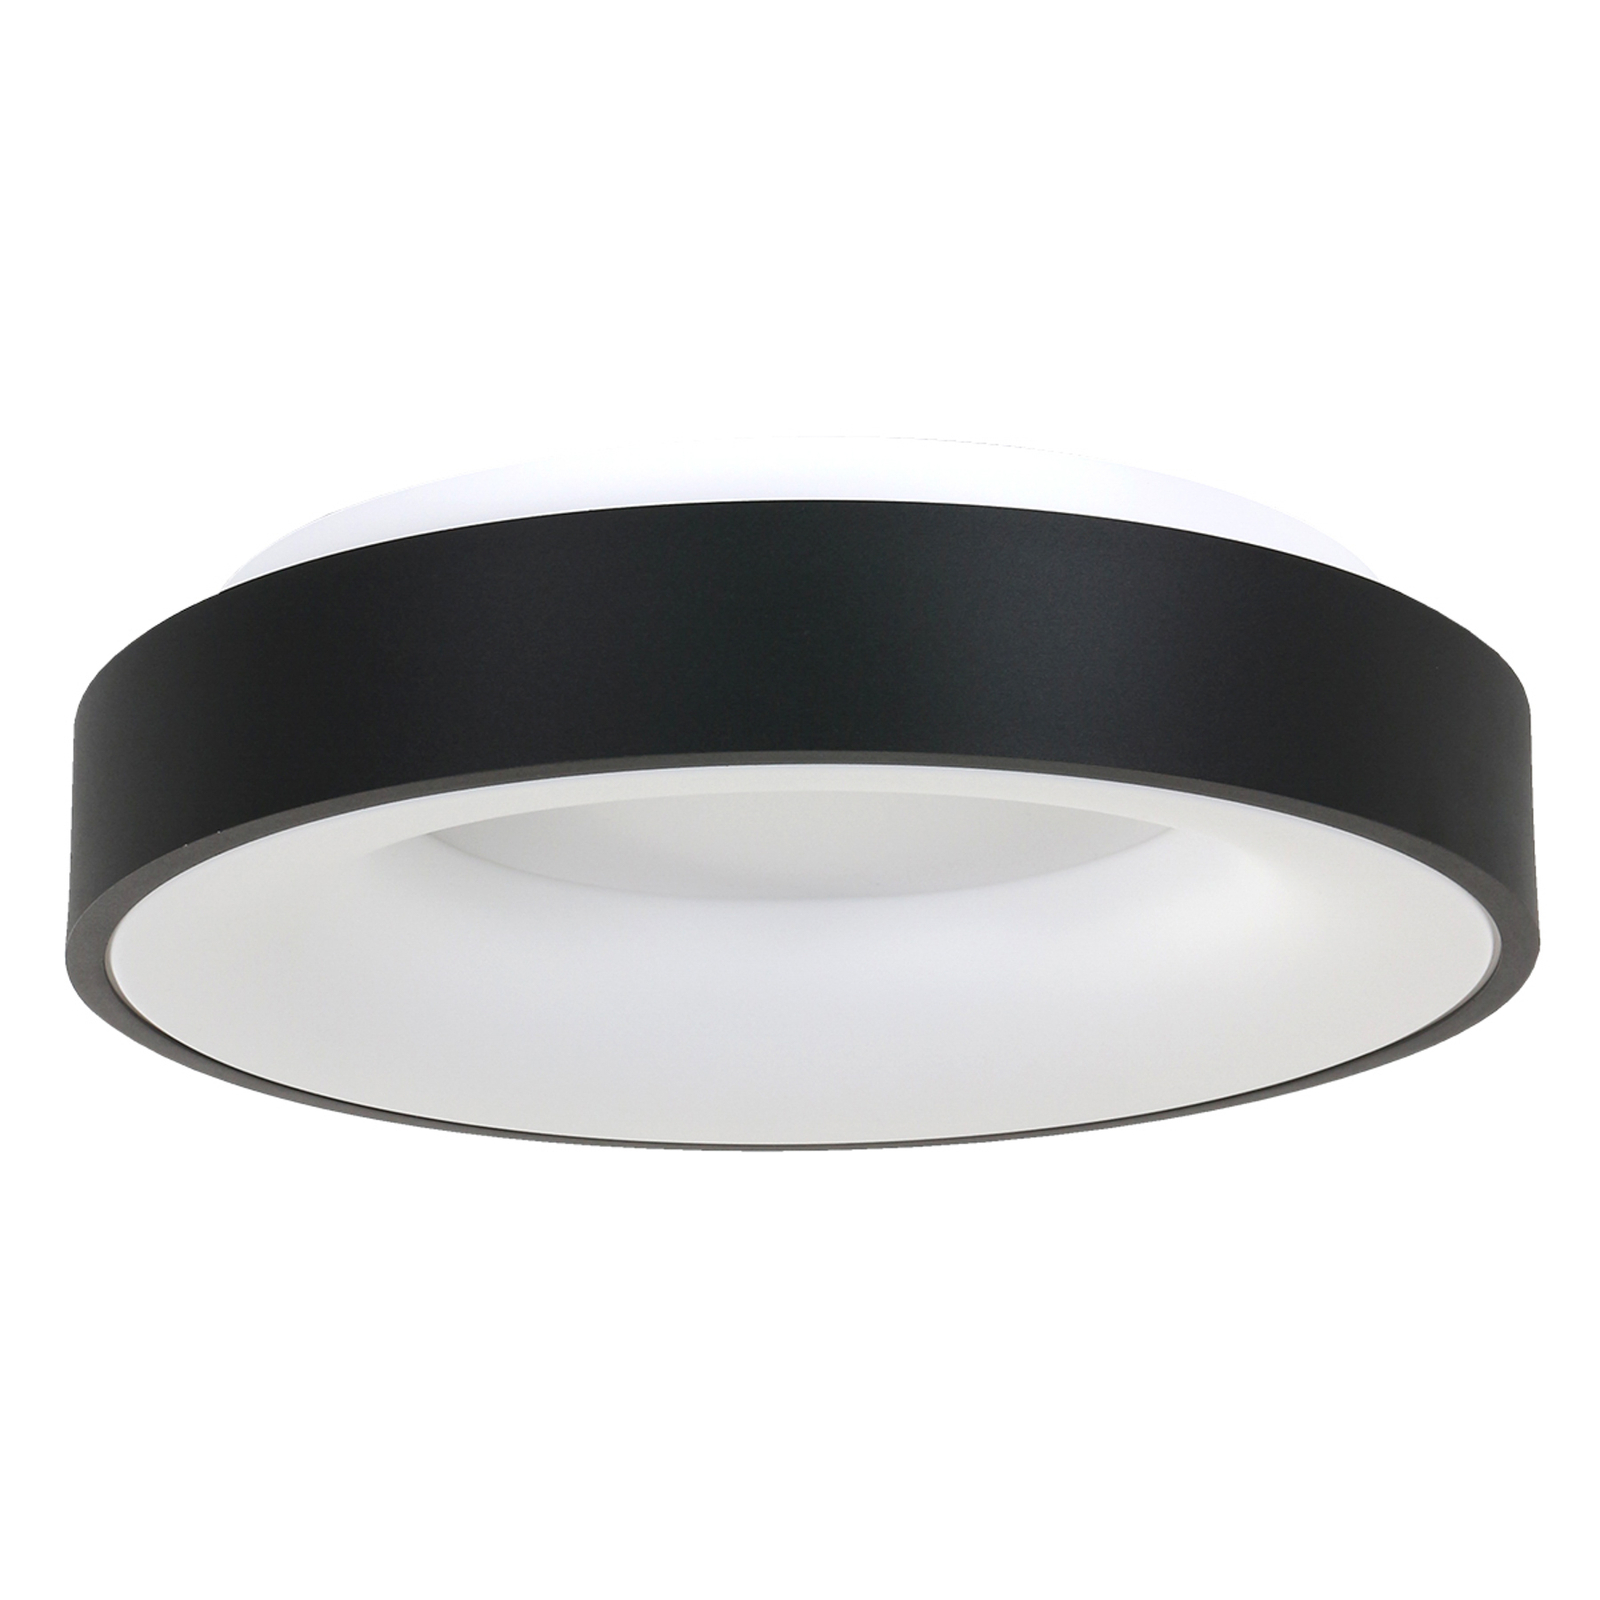 LED ceiling light Ringlede 2,700 K Ø 48 cm black